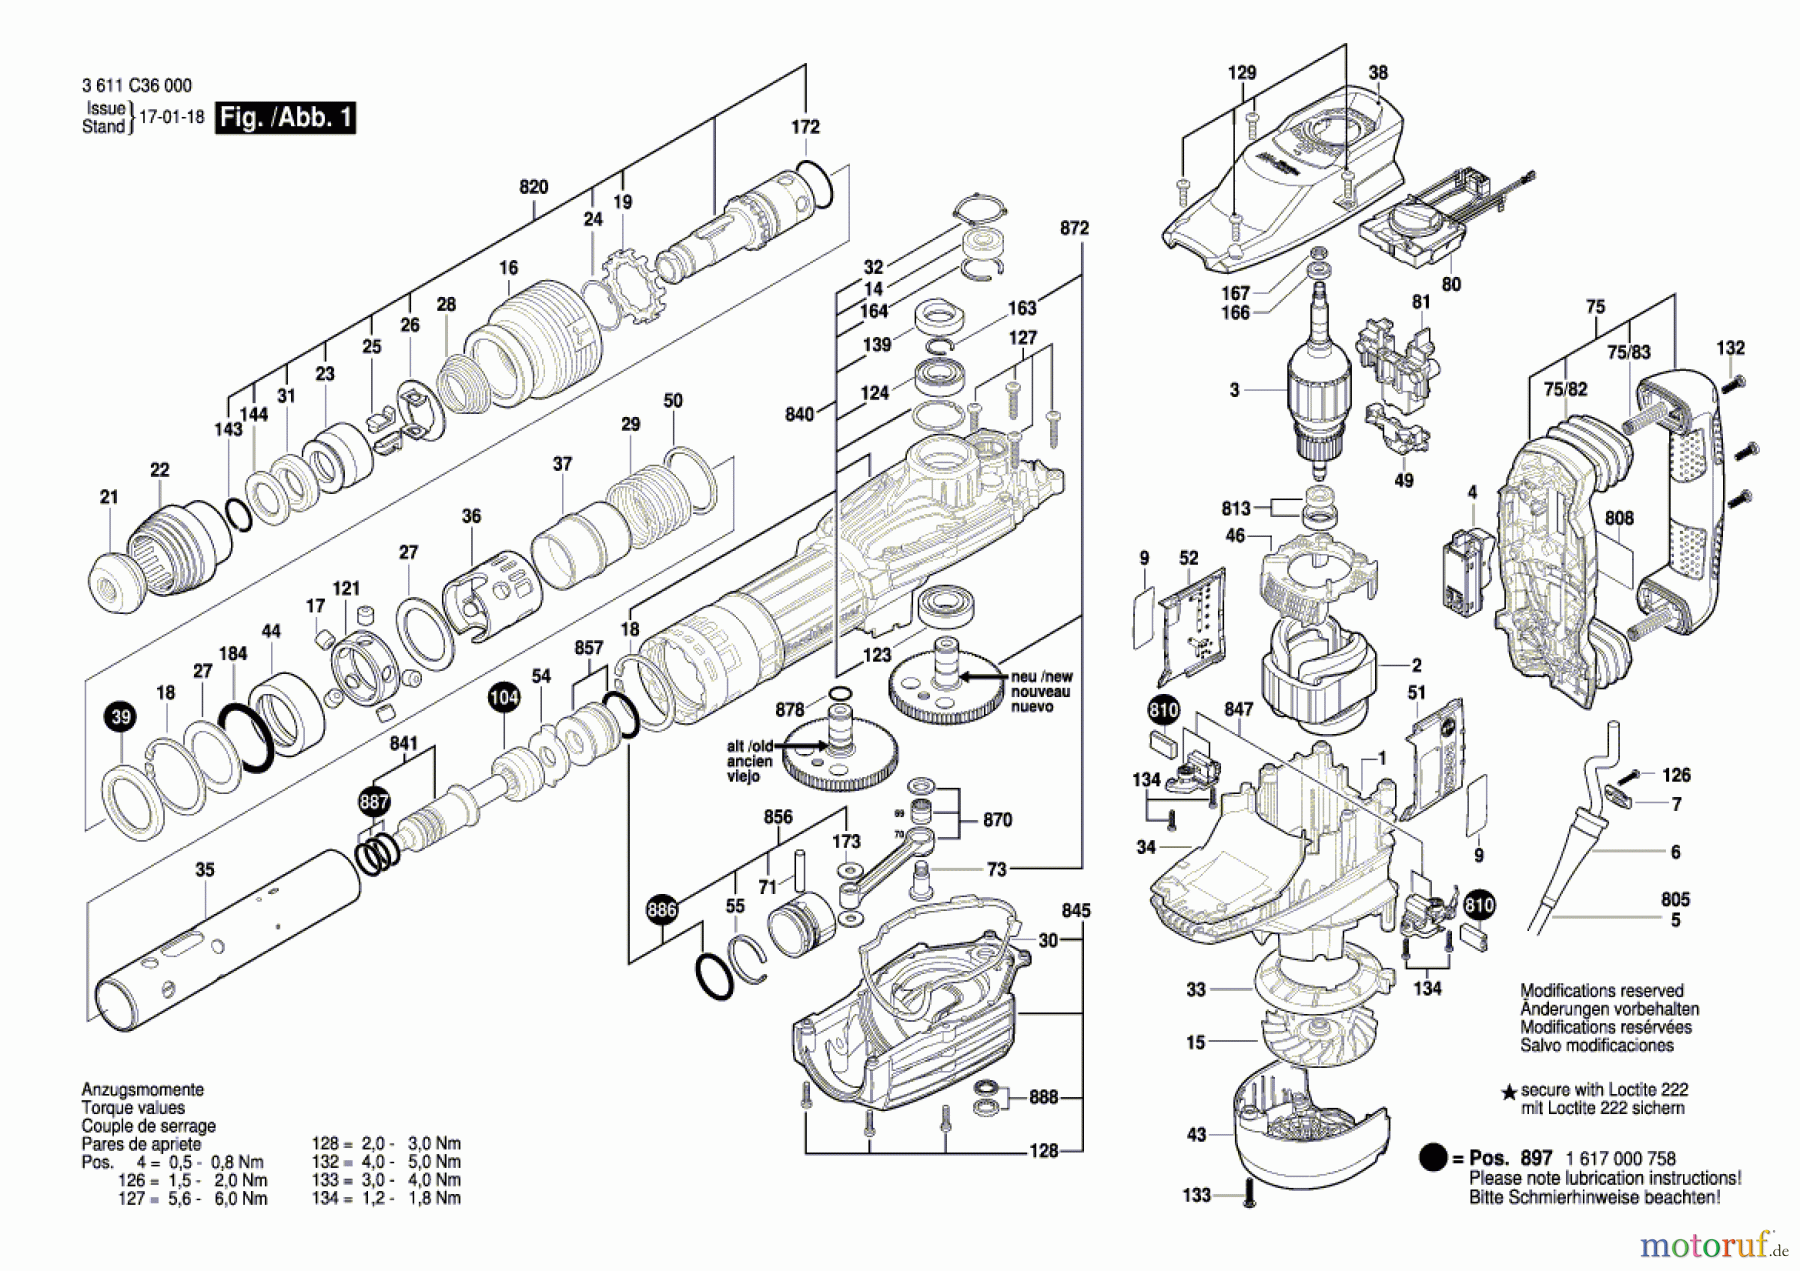  Bosch Werkzeug Schlaghammer GSH 11 VC Seite 1